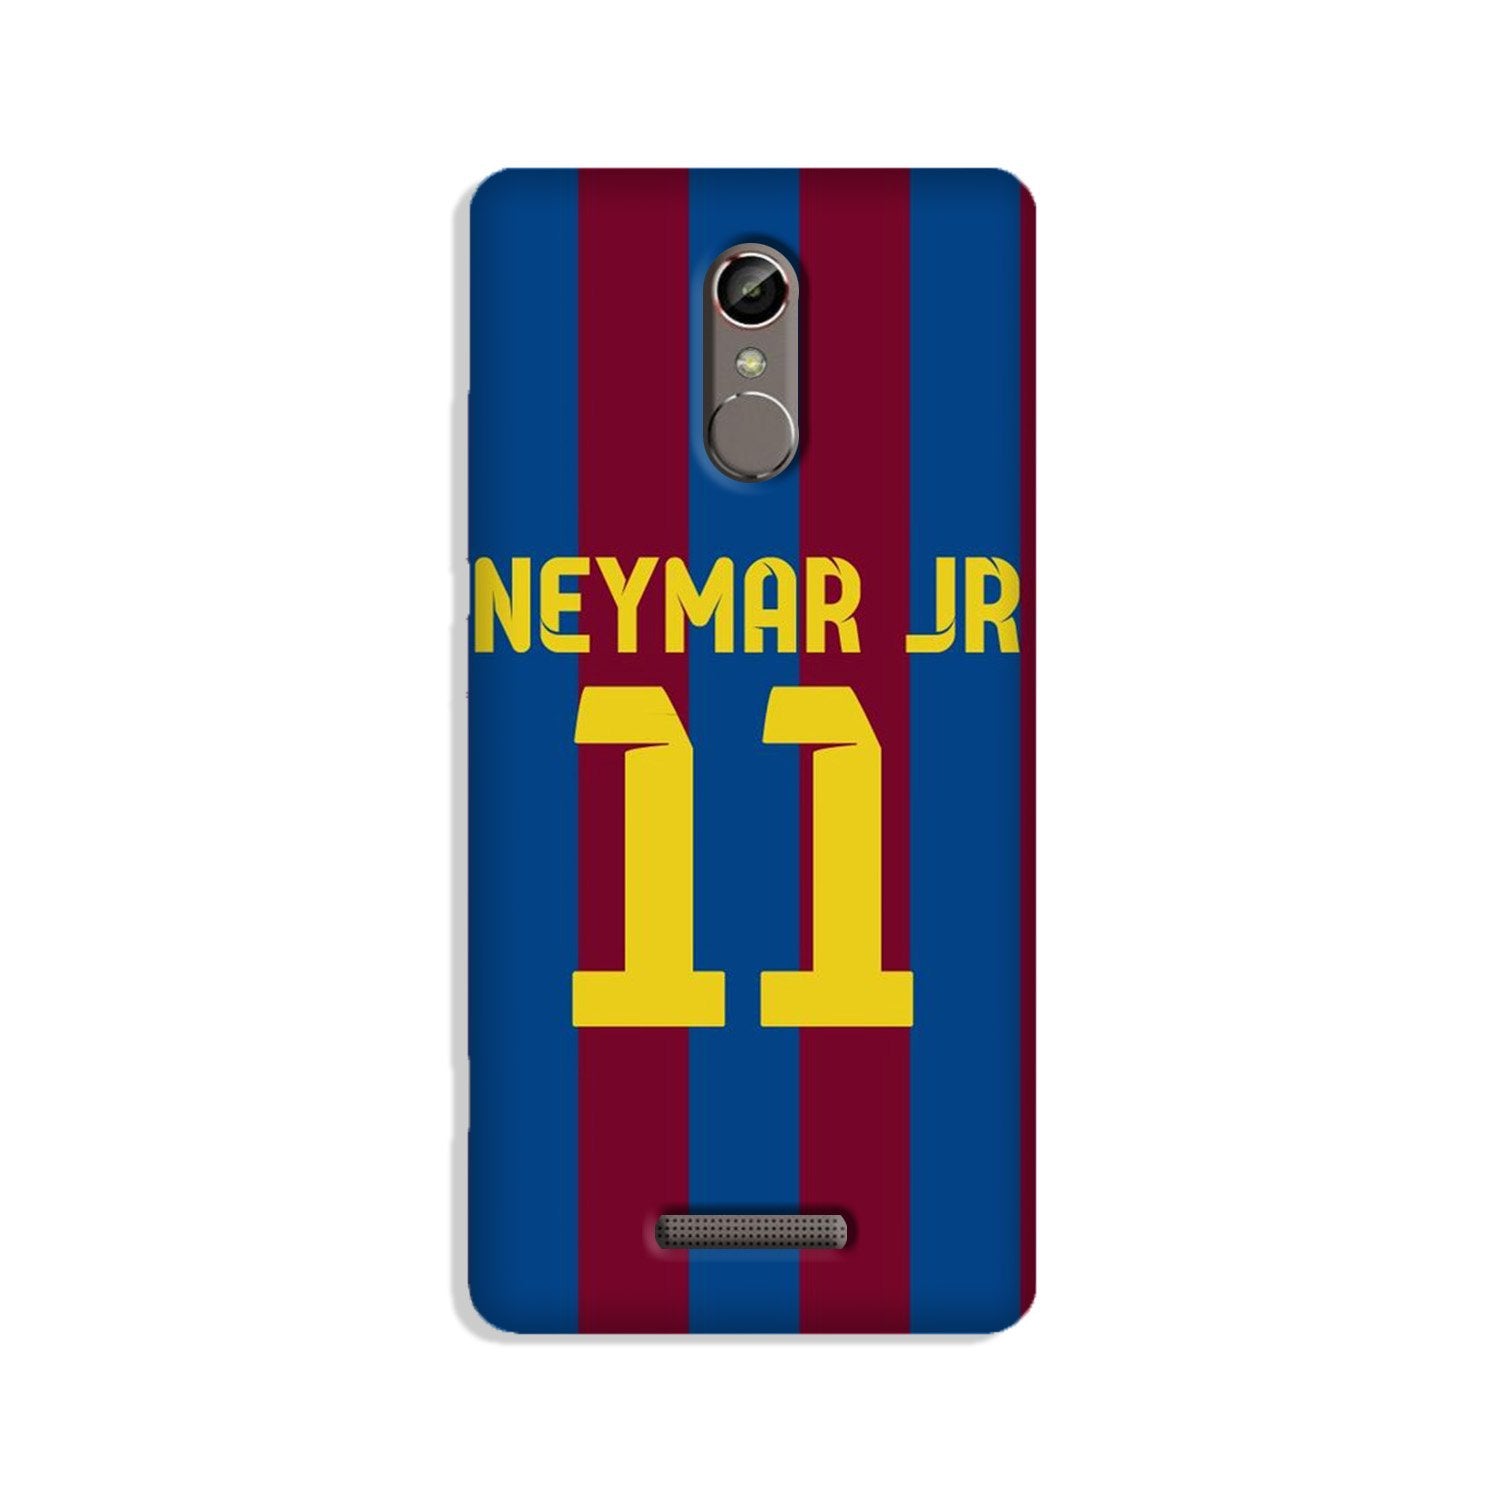 Neymar Jr Case for Gionee S6s(Design - 162)